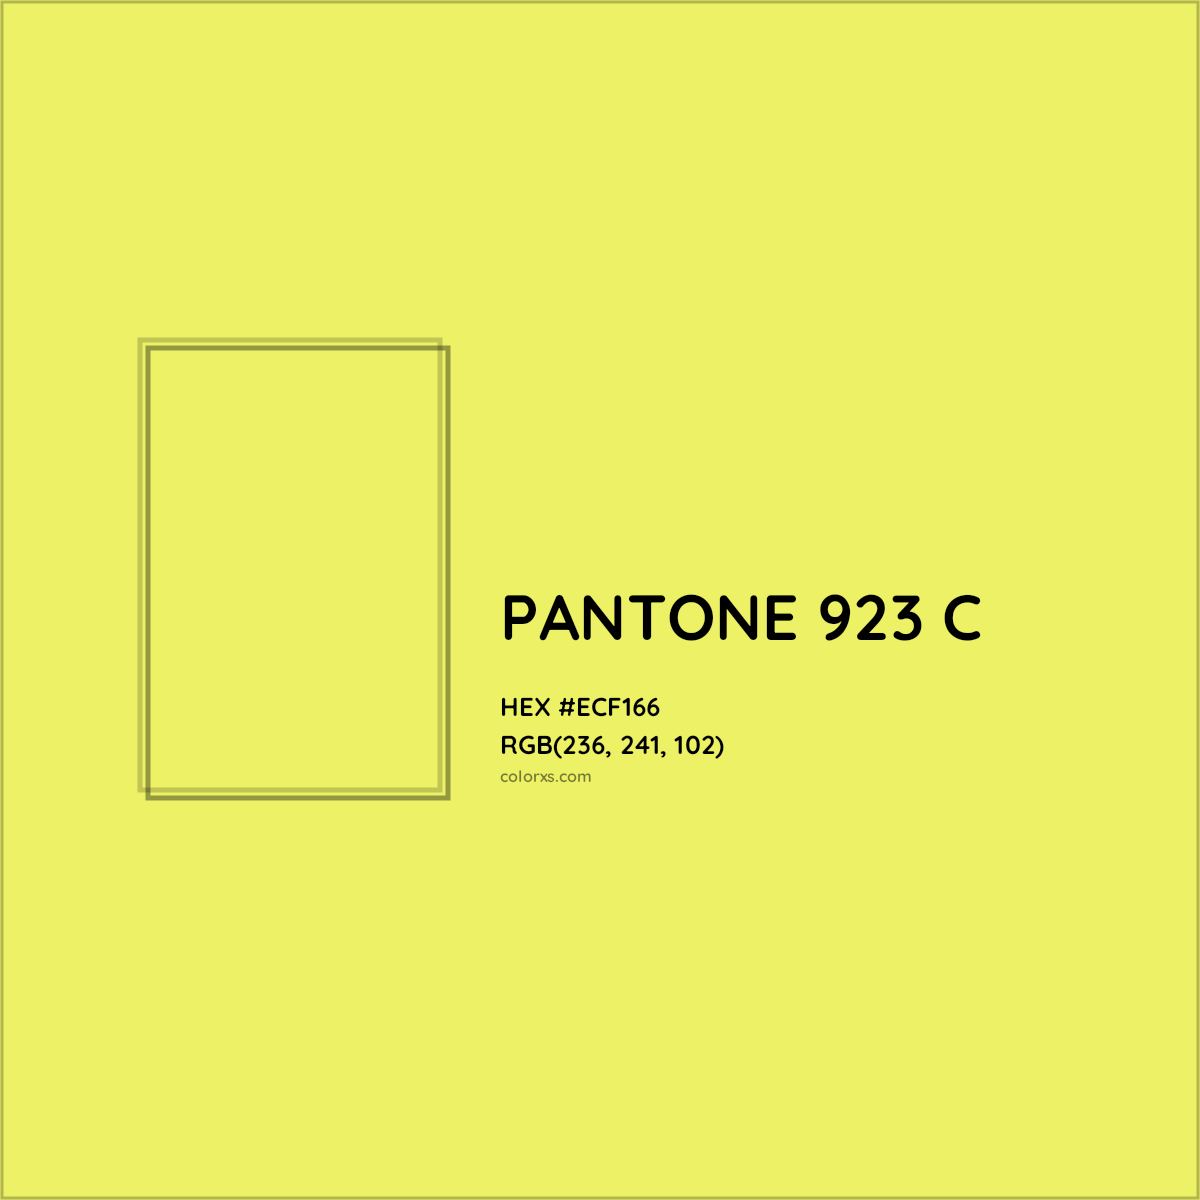 HEX #ECF166 PANTONE 923 C CMS Pantone PMS - Color Code